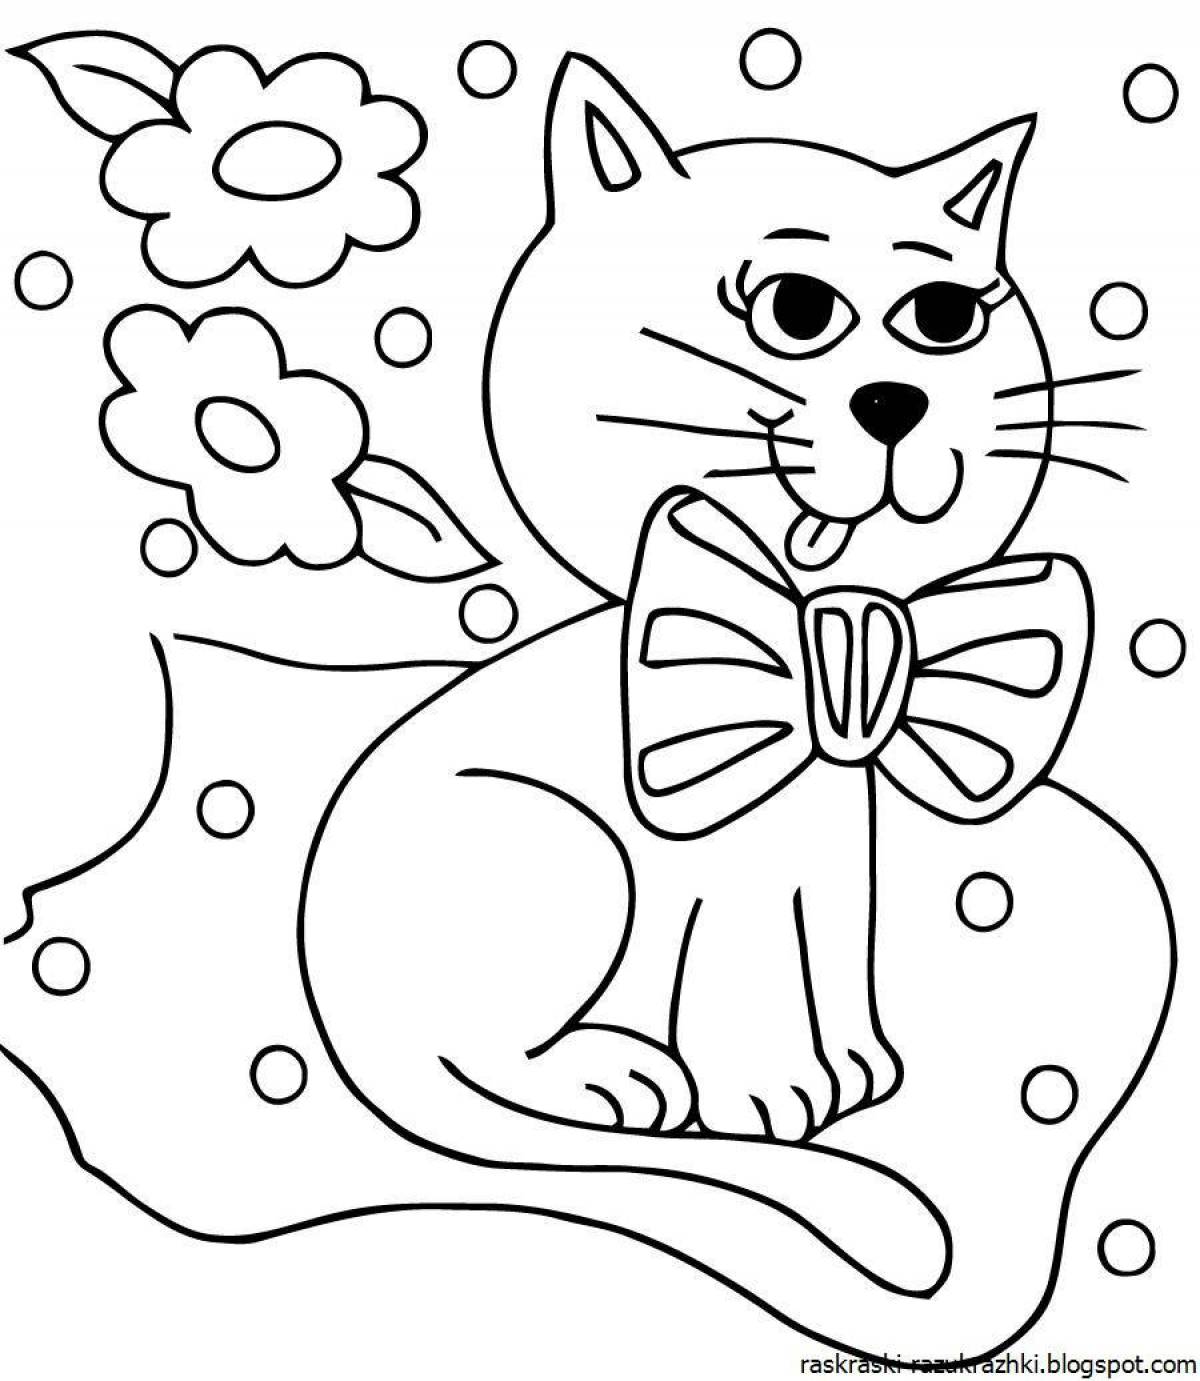 Гипнотическая раскраска кот для детей 6-7 лет